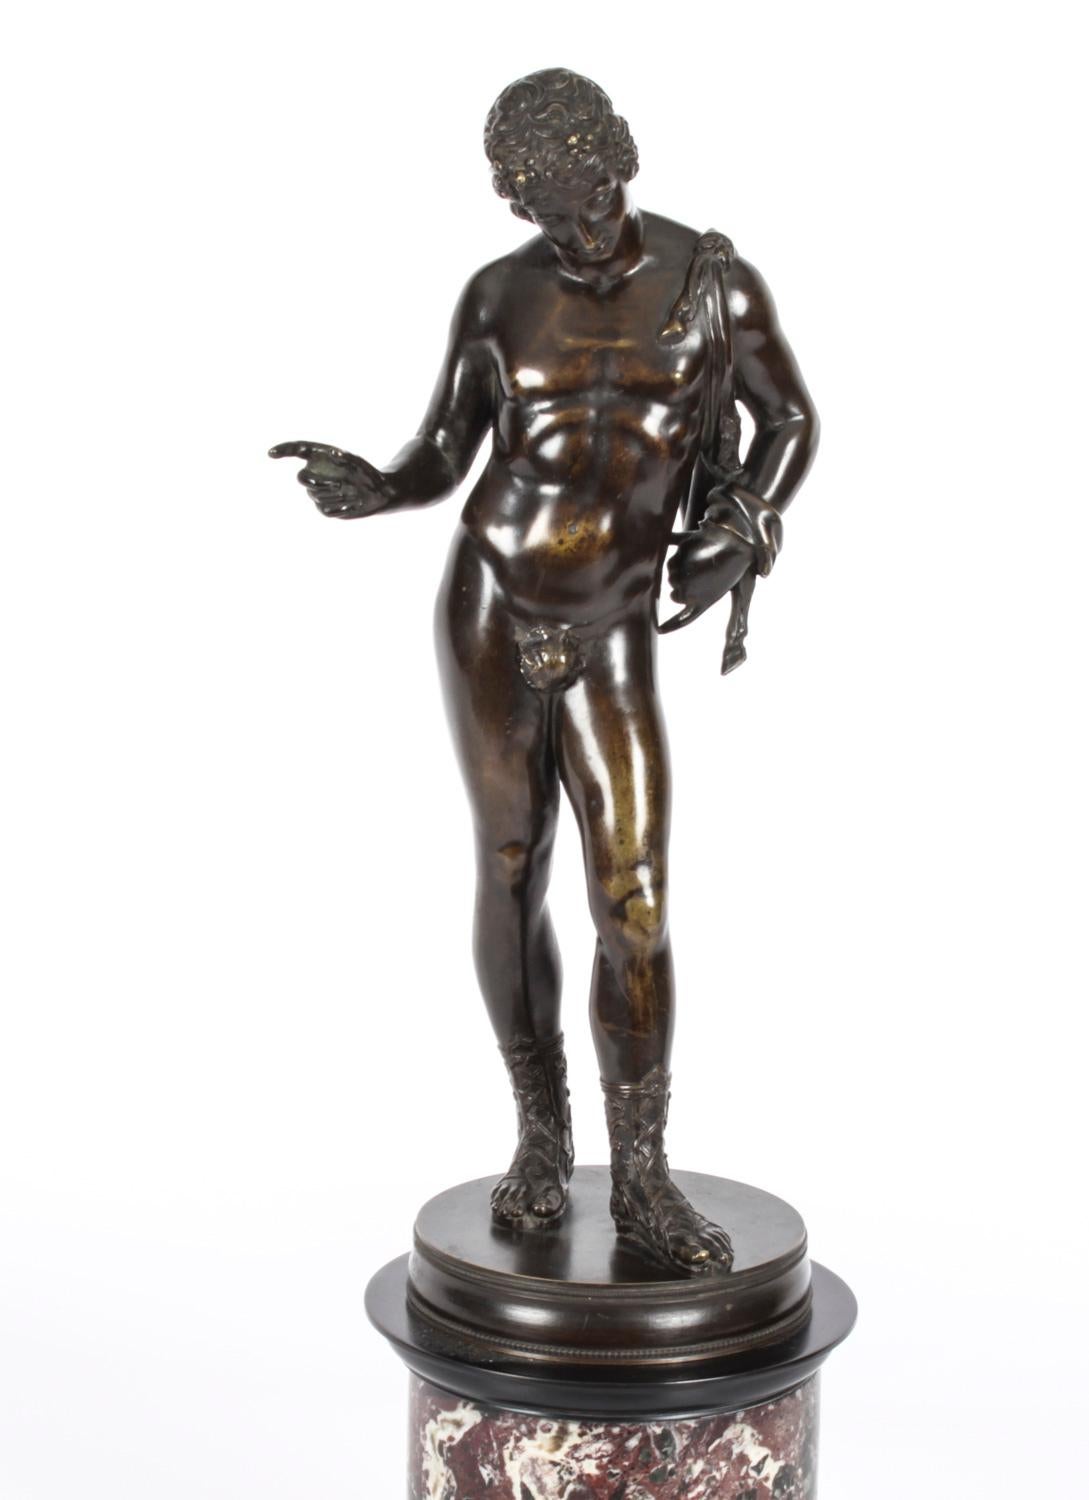 Il s'agit d'une superbe version de David en bronze patiné du Grand Tour, datant du milieu du XIXe siècle.
 
La statue en bronze représente David avec un sourire énigmatique, un pied en avant.
Le jeune homme est entièrement nu, à l'exception de